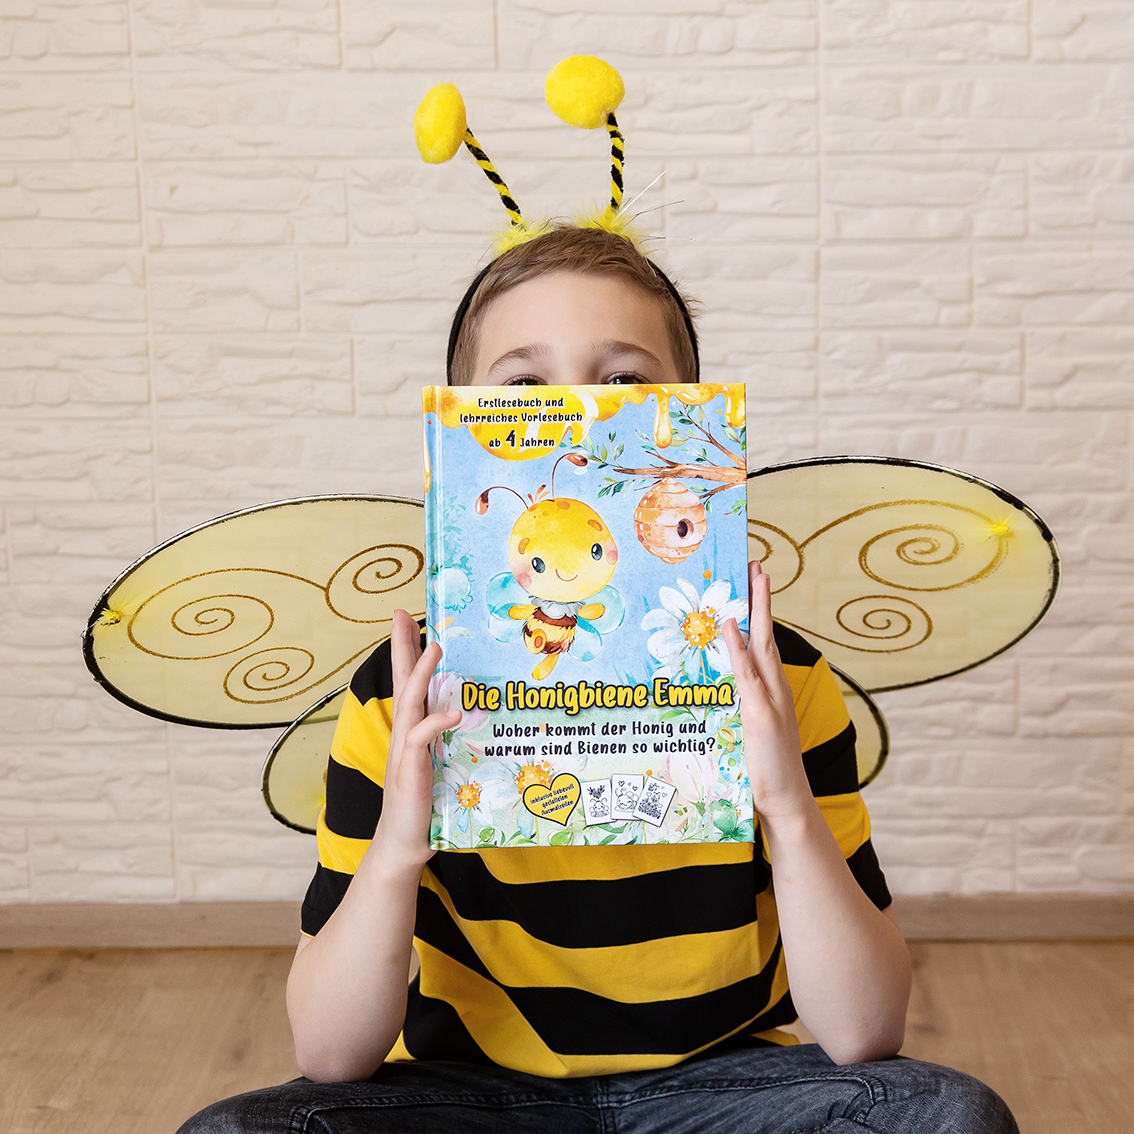 Die Honigbiene Emma. Woher kommt der Honig und warum sind Bienen so wichtig? Vorlesebuch inklusive Ausmalseiten - Barbara Lachner - Autorin und Fotografin - Barbara Lachner Blog-Weißt du eigentlich, woher der Honig kommt?
In diesem kleinen Biene-Abenteuer zum Kuscheln, Vorlesen und Lernen, erklärt Biene Emma wie der Honig entsteht, wie wichtig Bienen für unsere Umwelt sind und wie man sie schützen kann. Die Kinder Tim und Sophie treffen die Biene Emma und hören ihr interessiert zu. Eine liebevolle Geschichte über Bienen und die Entstehung von Honig. Ein lehrreiches Erstlesebuch und Vorlesebuch für Kinder ab 4 Jahren.